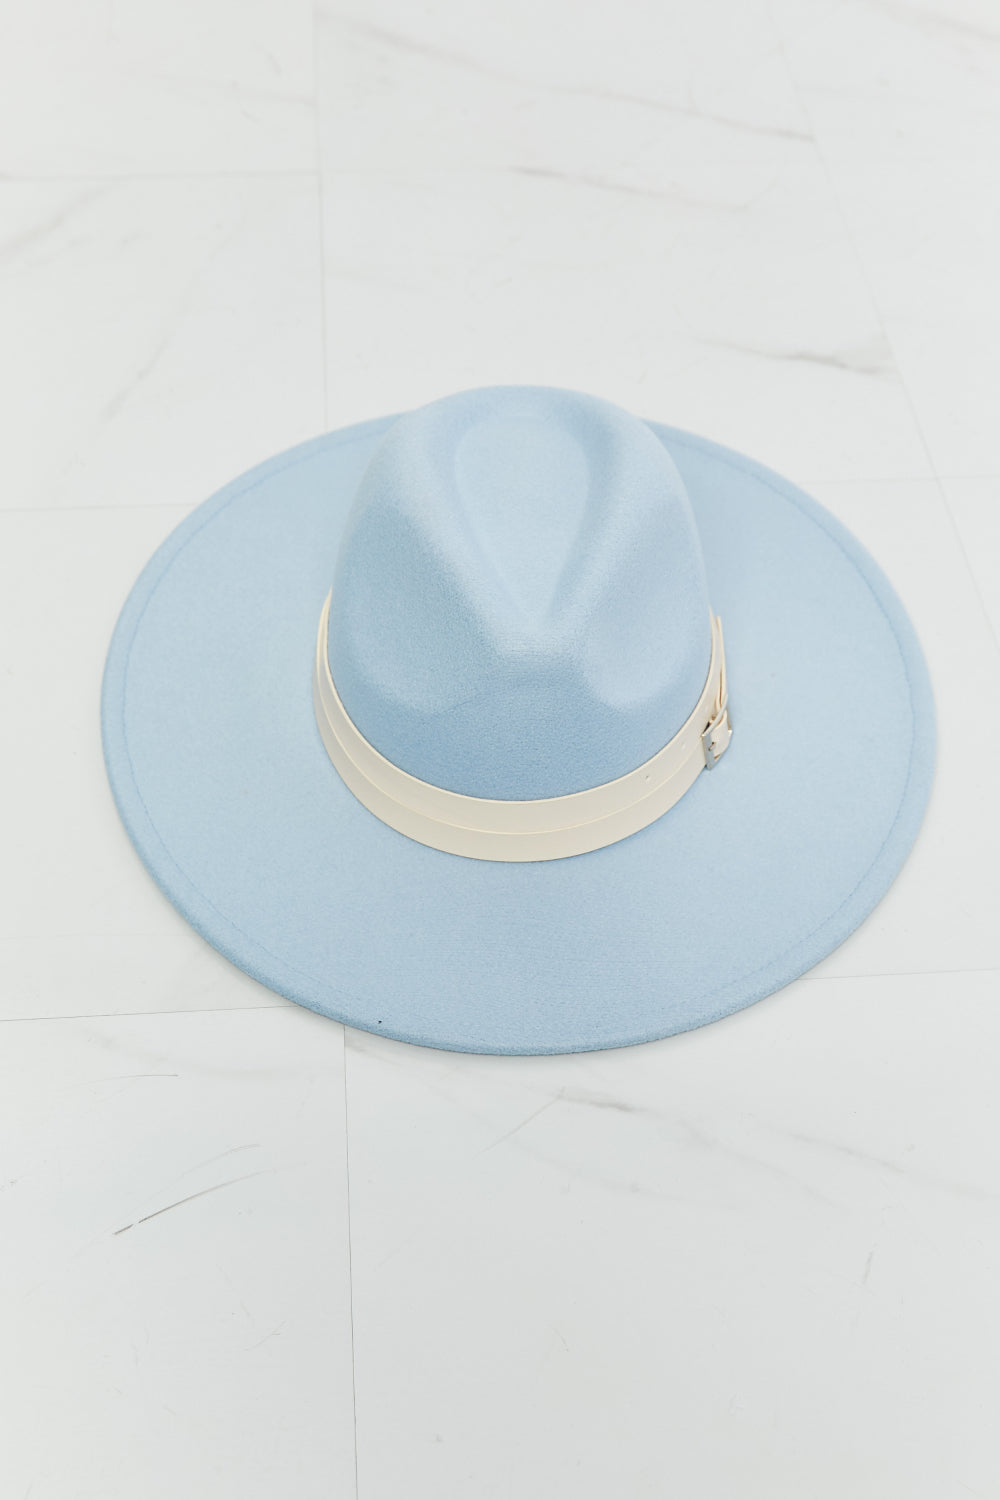 Fame Summer Blues Fedora Hat - The Fashion Unicorn